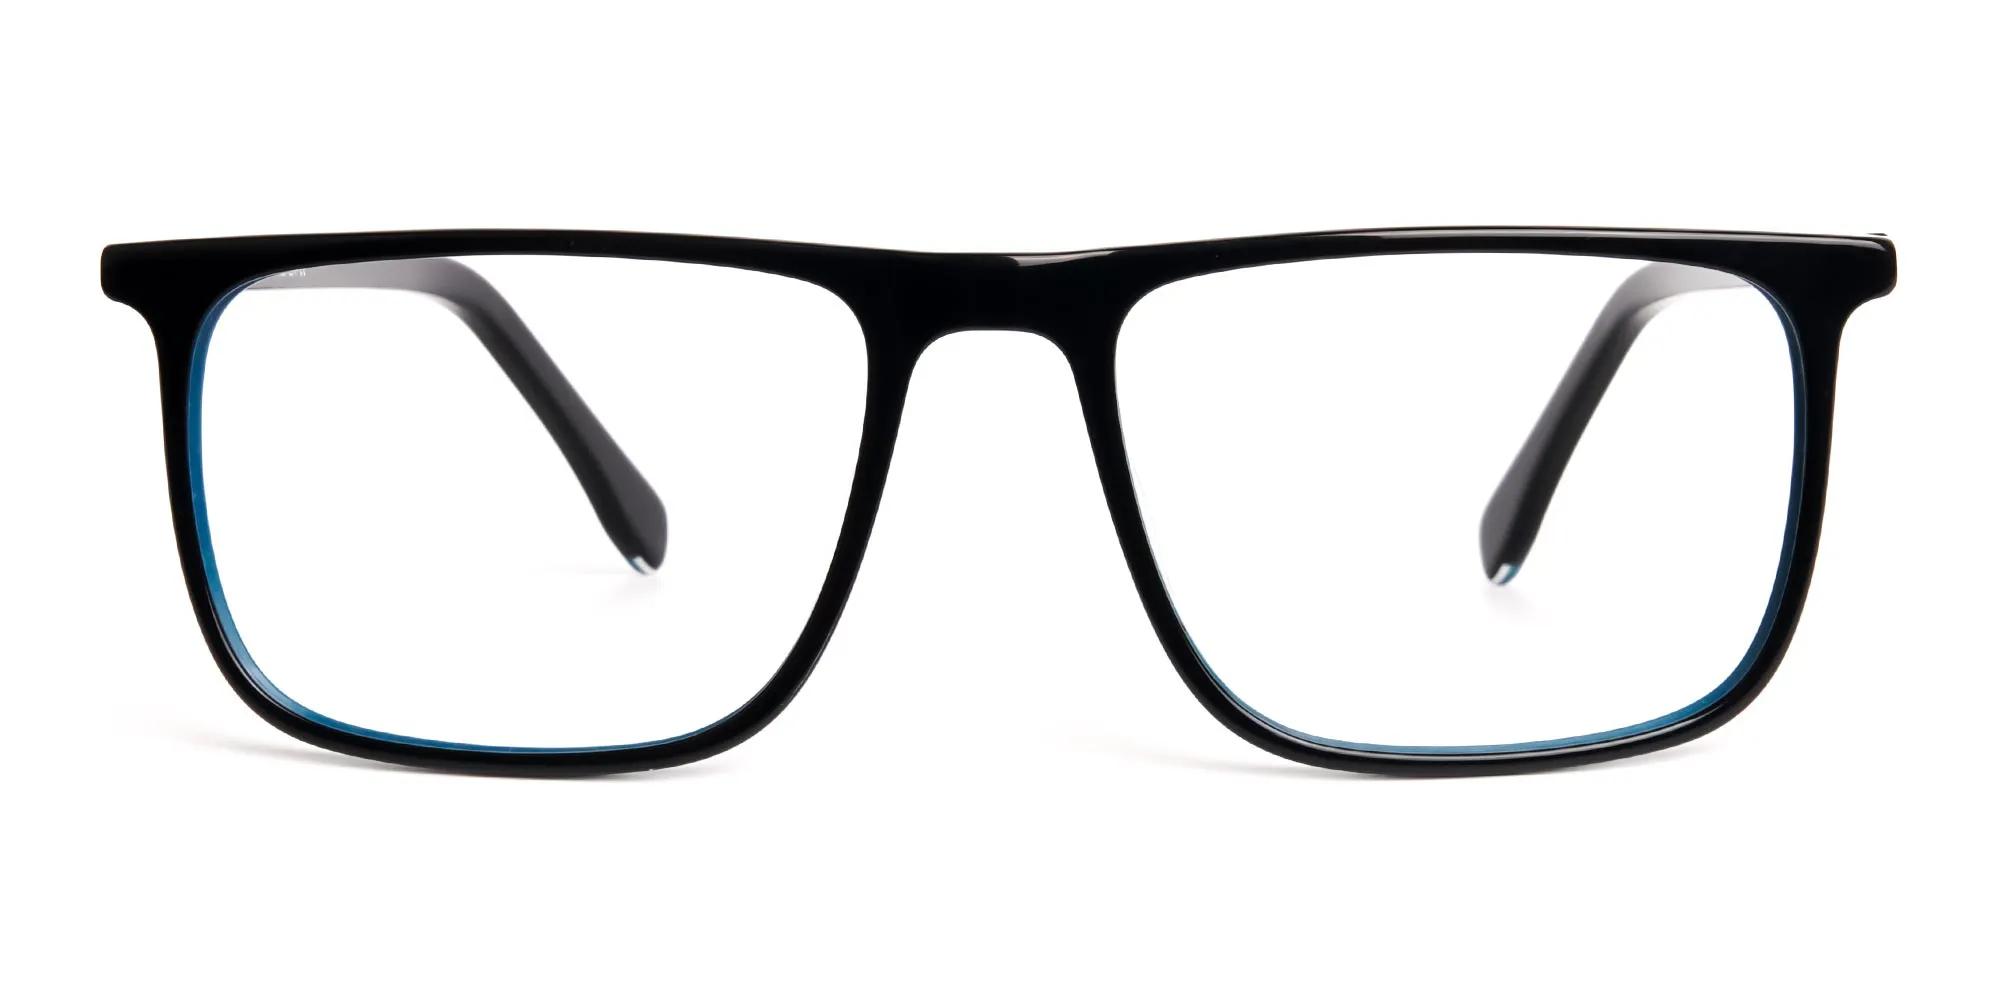 black-and-teal-full-rim-rectangular-glasses-frames-2